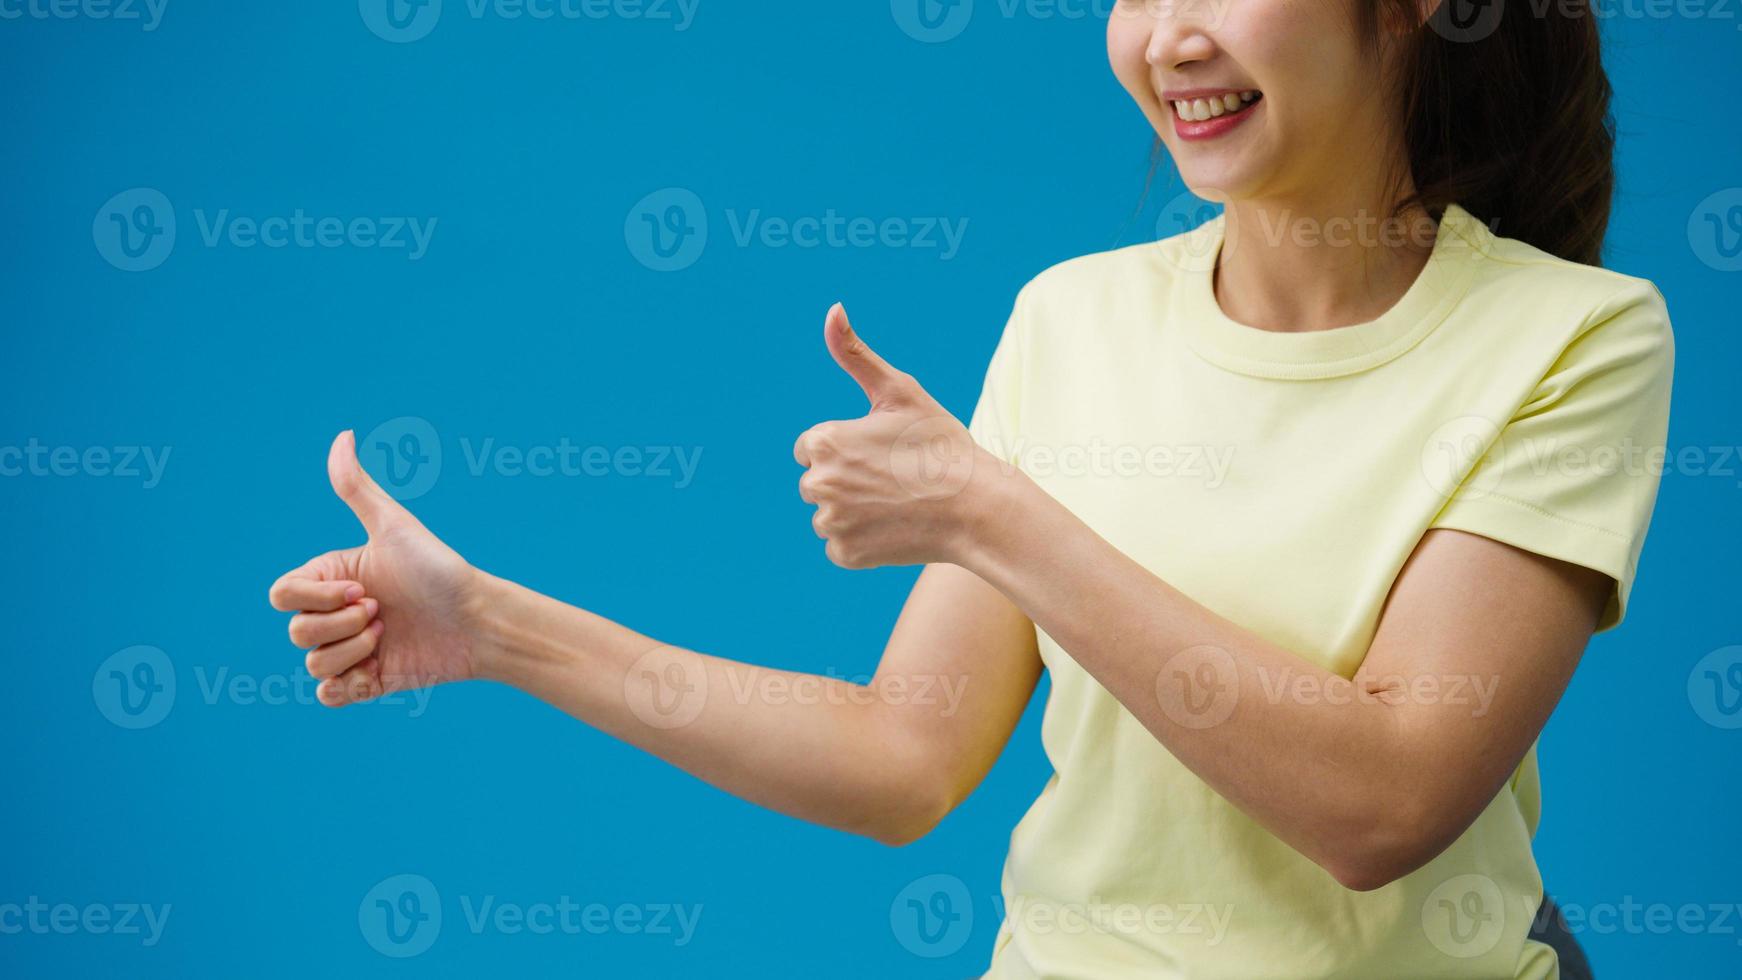 main de jeune femme montrant le pouce vers le haut signe avec les doigts isolés sur fond bleu en studio. copiez l'espace pour placer un texte, un message pour la publicité. zone publicitaire, maquette de contenu promotionnel. photo